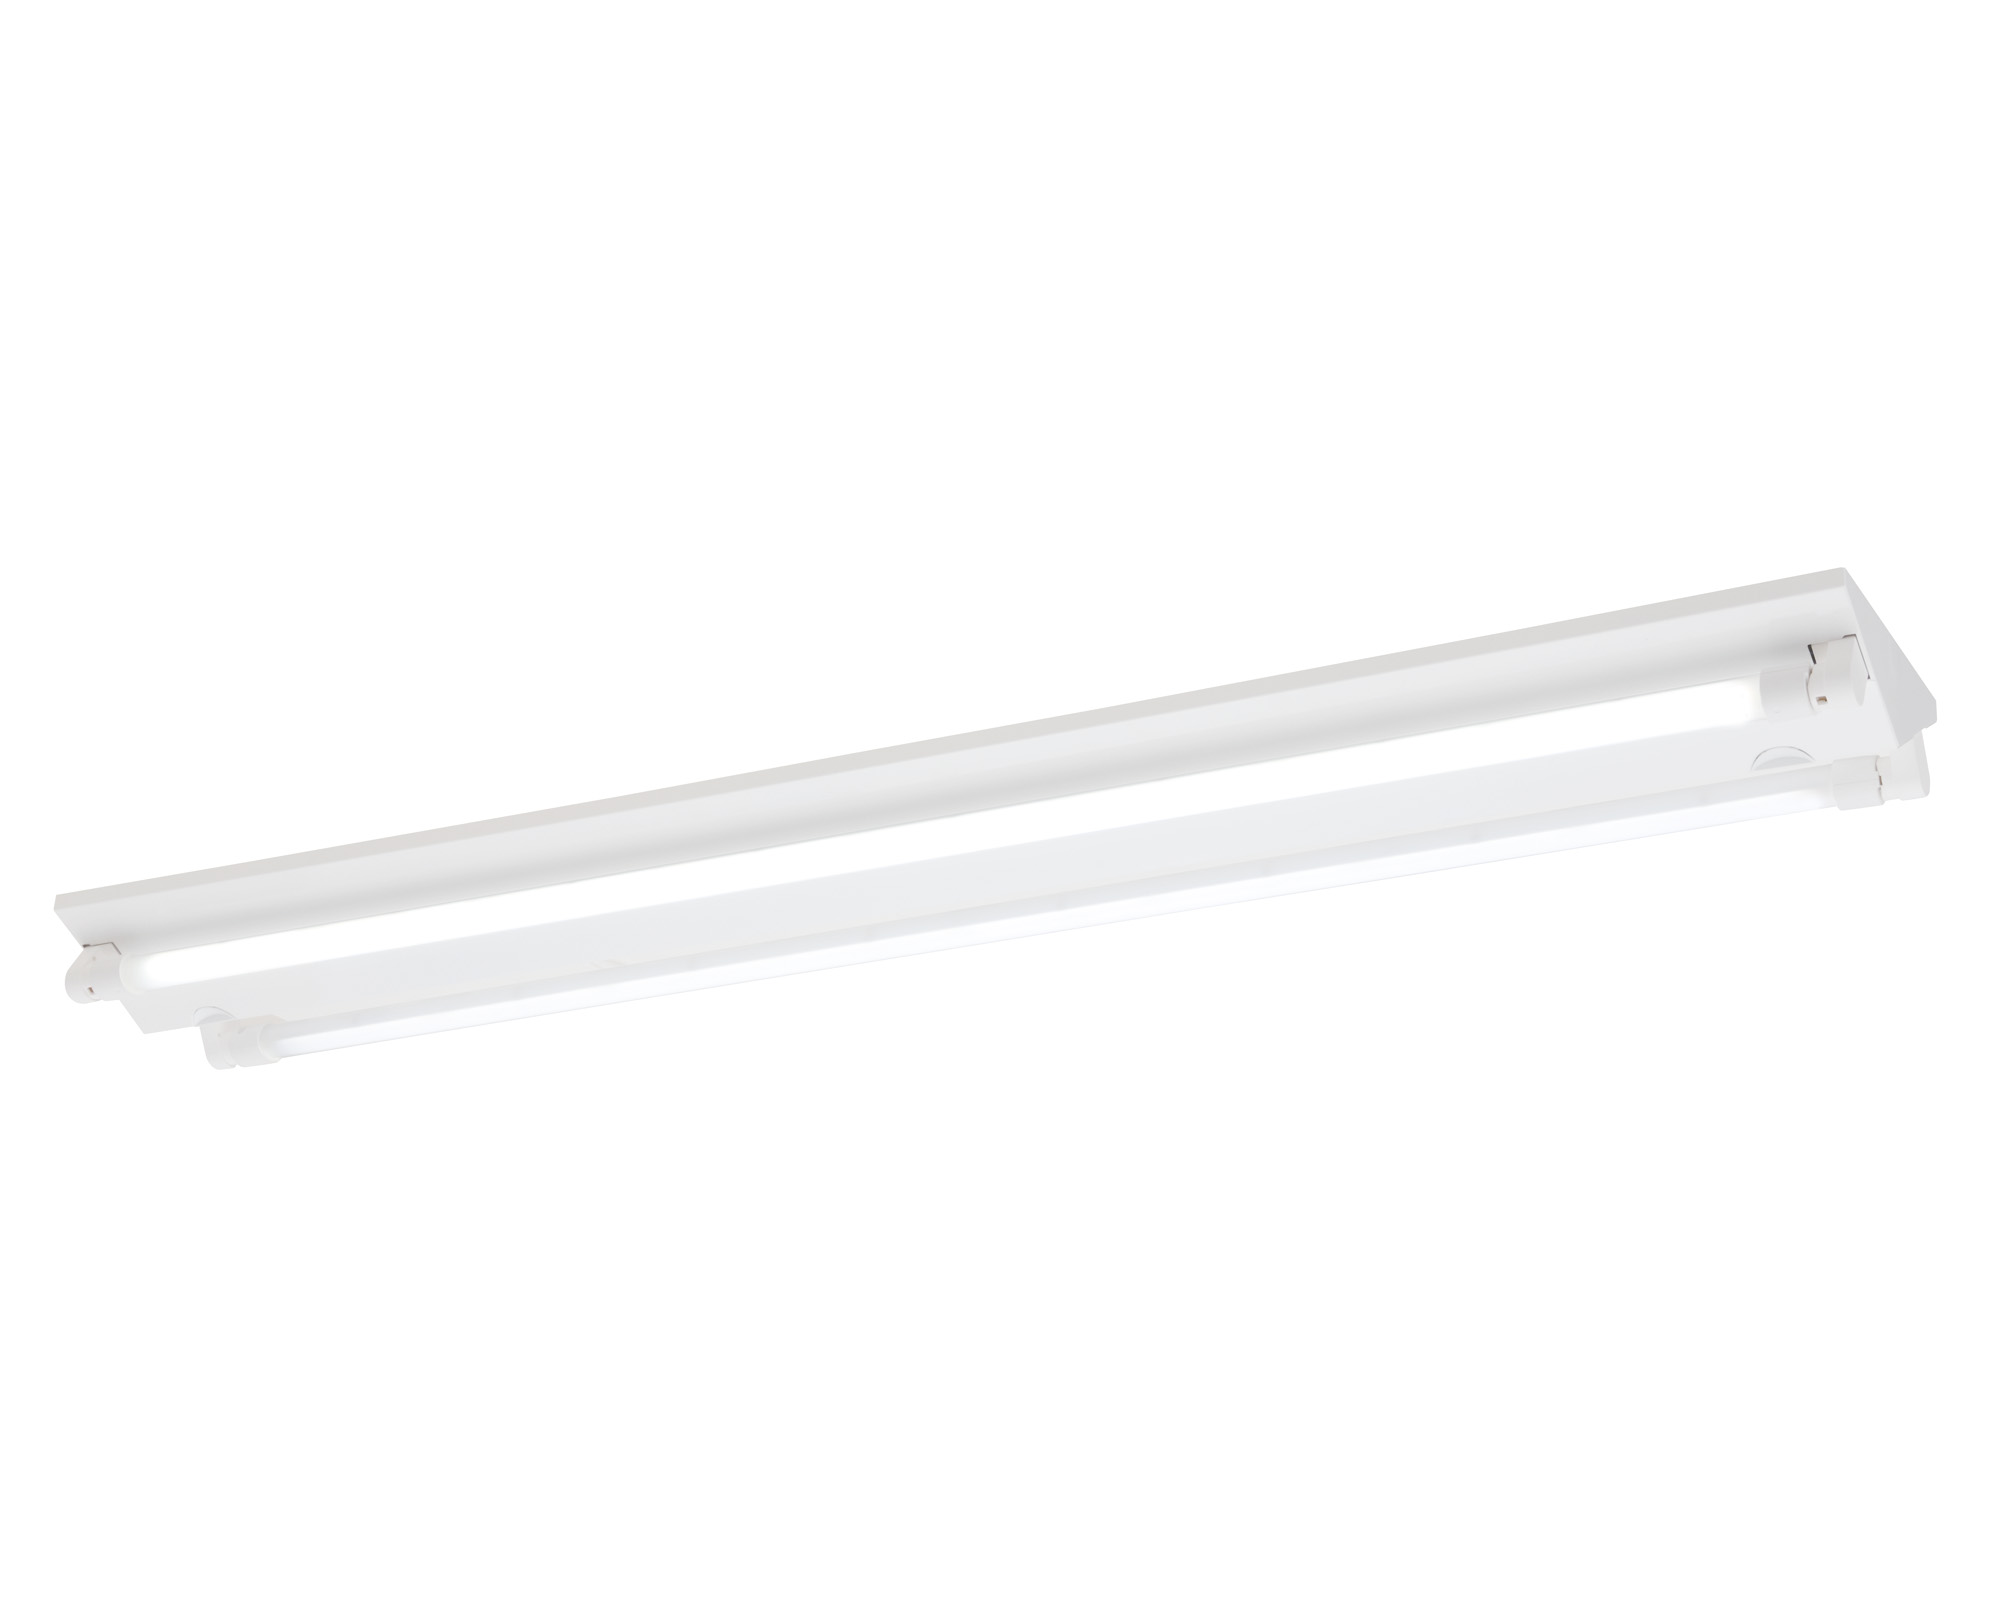 高光束タイプの直管形LEDランプが登場、「EVERLEDS」Hf32形高出力器具相当の明るさの直管形LEDランプ搭載ベースライト 新発売｜パナソニックのプレスリリース